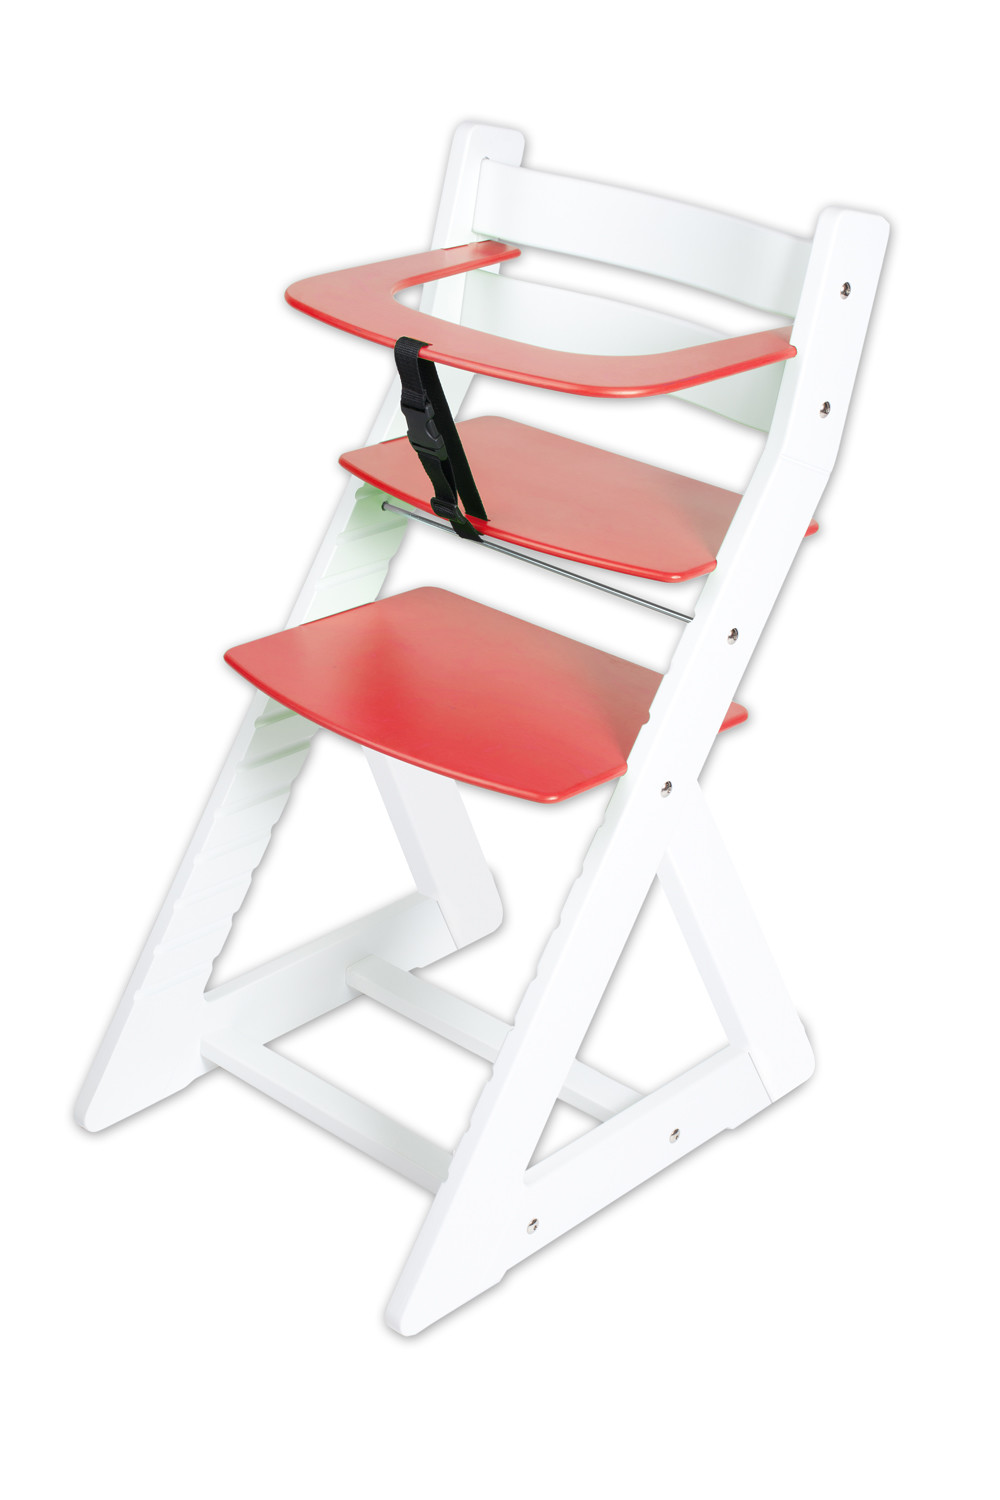 Hajdalánek Rostoucí židle ANETA - malý pultík (bílá, červená)